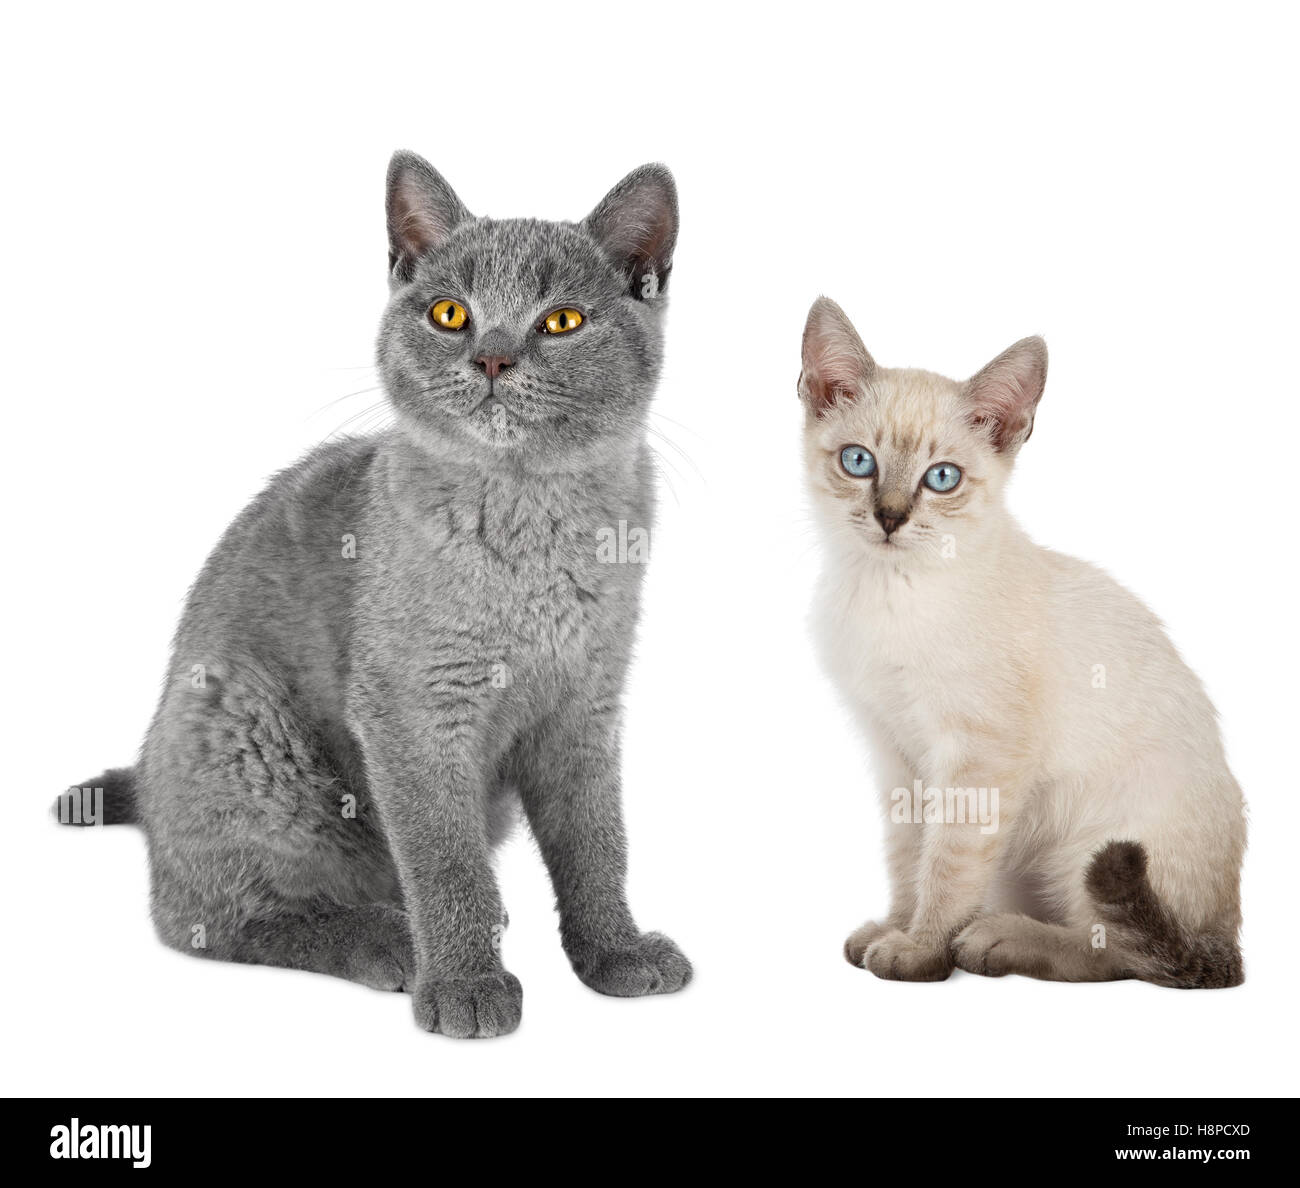 Due simpatici gattini gatti british blu capelli corti e thai siam seduti insieme isolato su sfondo bianco Foto Stock